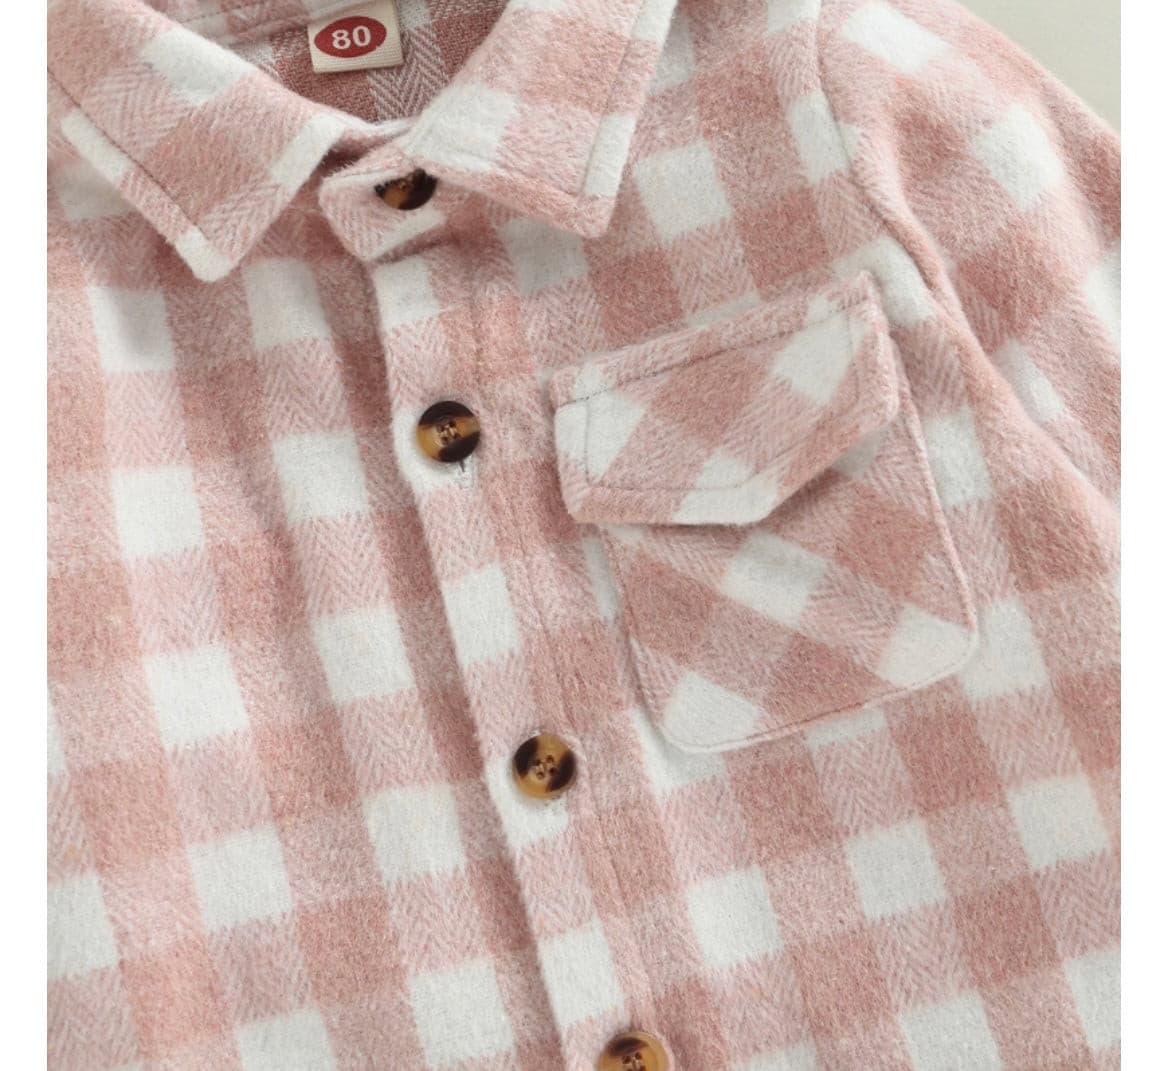 Girls Plaid Cotton Shirt - Pink Check.